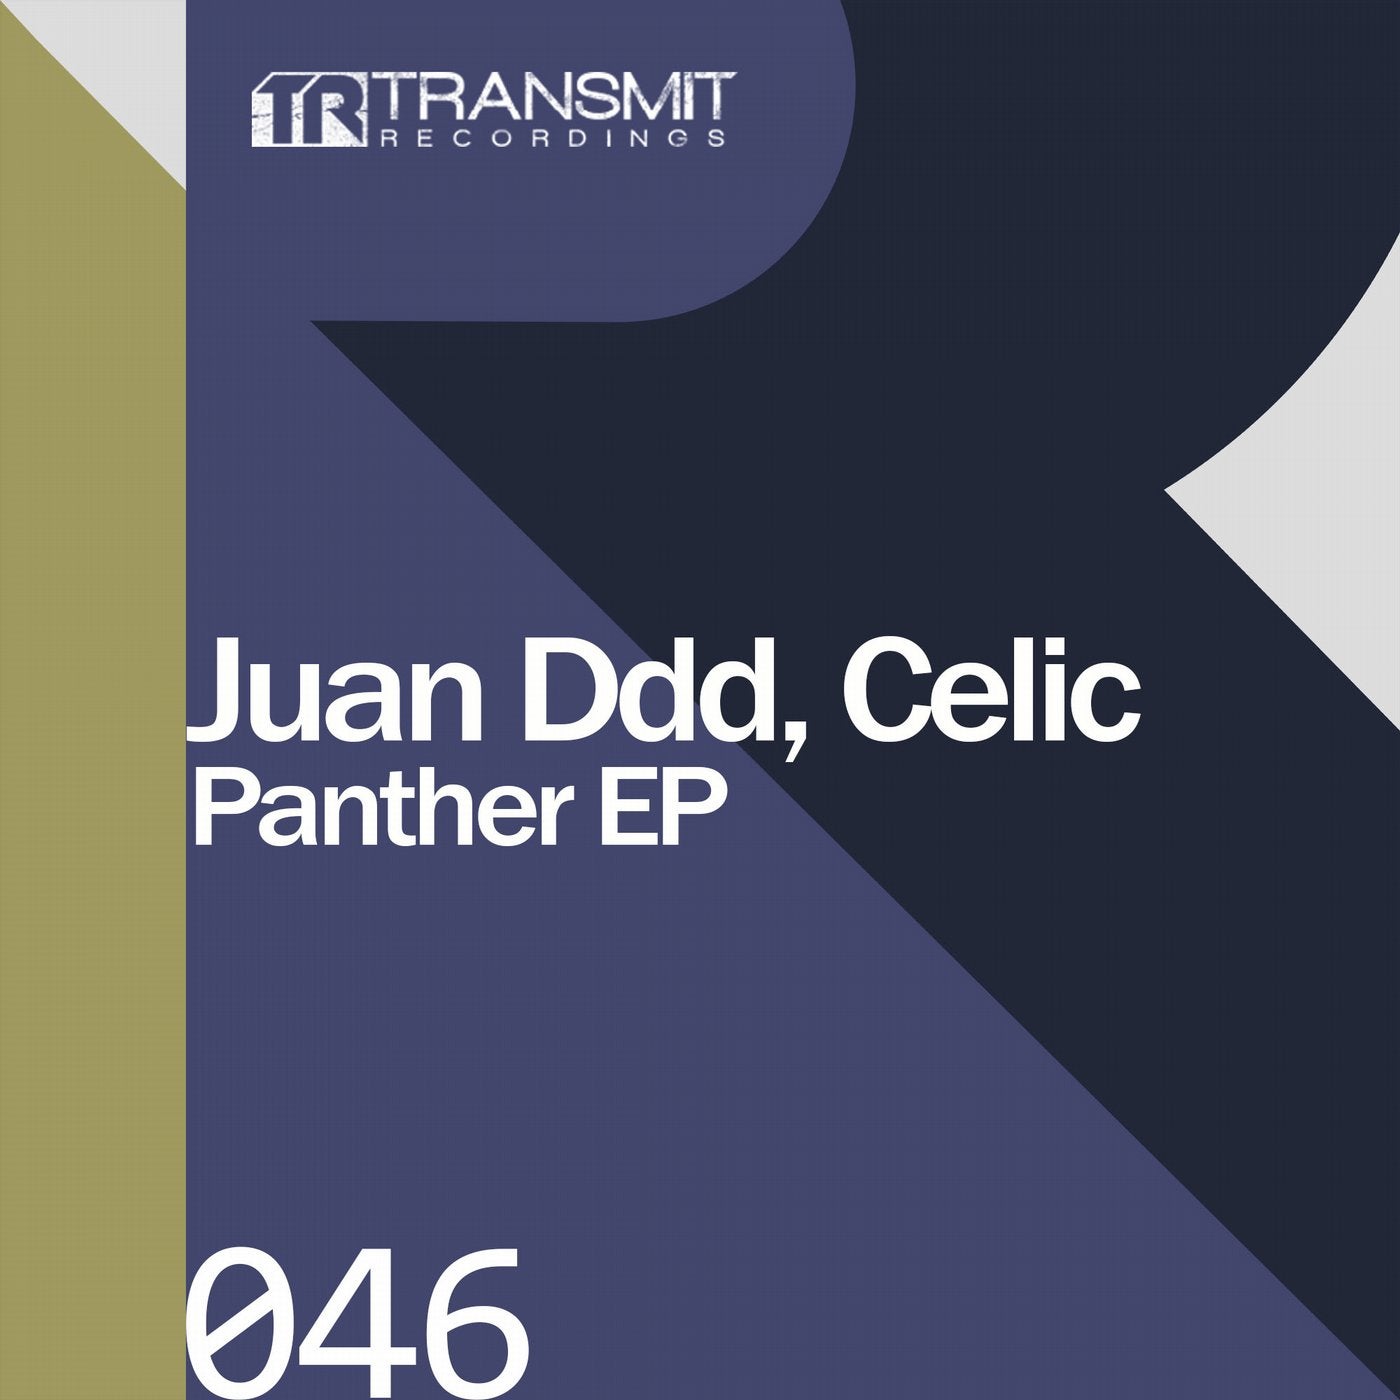 Juan Ddd, Celic - Panther EP